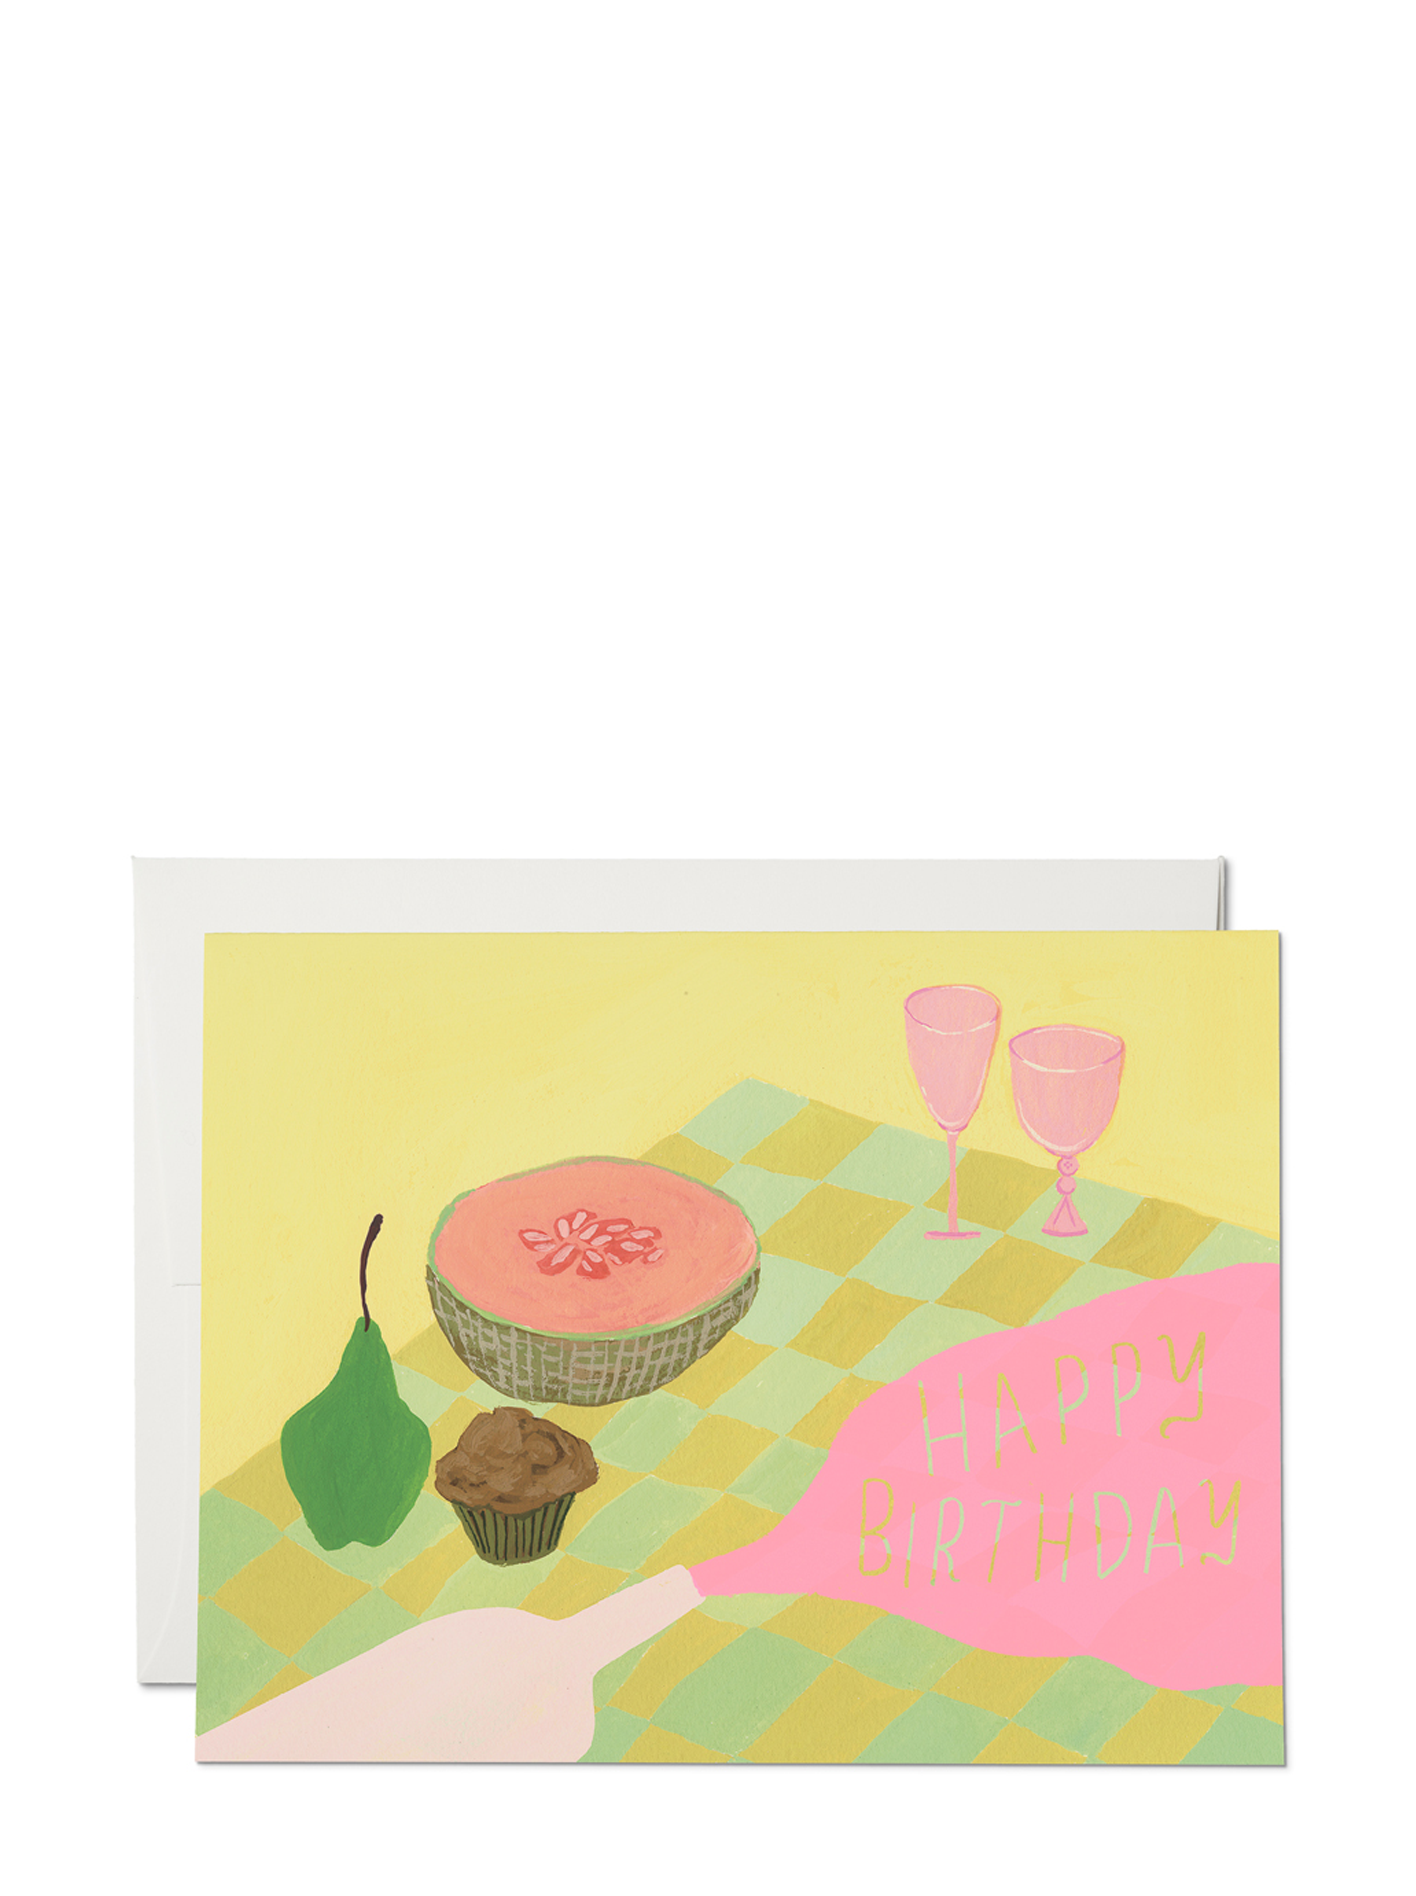 Spilled Wine Birthday Card